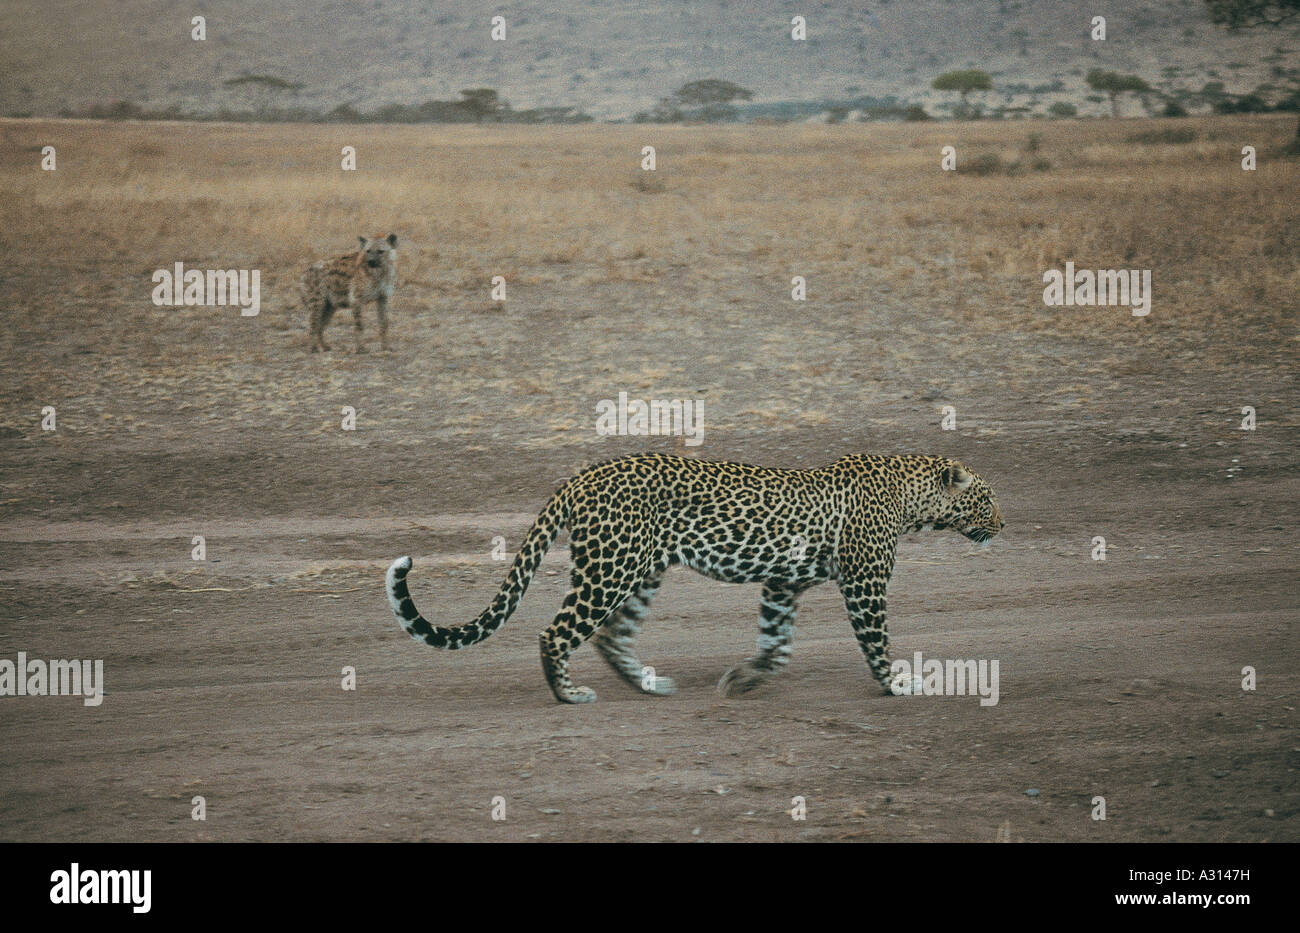 Leopard détendue à quelques proches de hyène Parc National de Serengeti Tanzanie Afrique de l'est le léopard fait fi de la hyène Banque D'Images